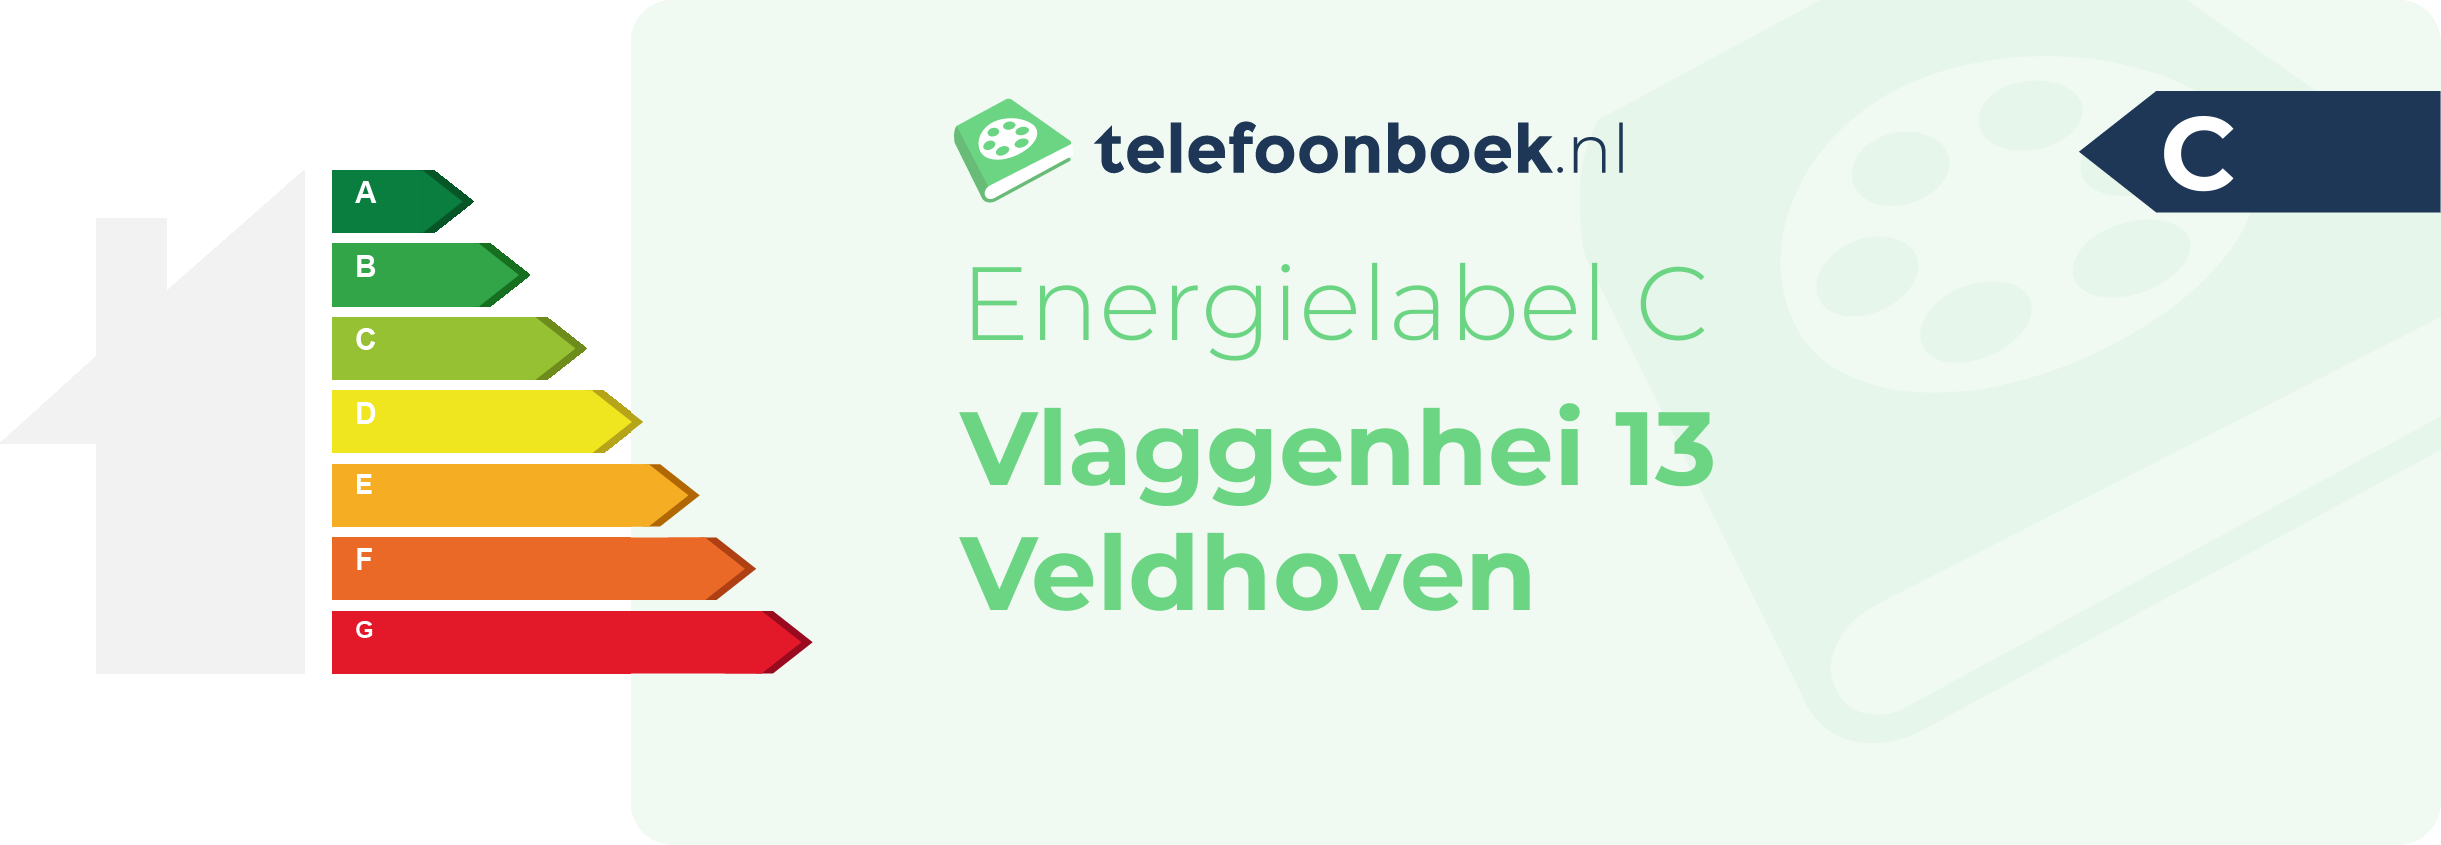 Energielabel Vlaggenhei 13 Veldhoven